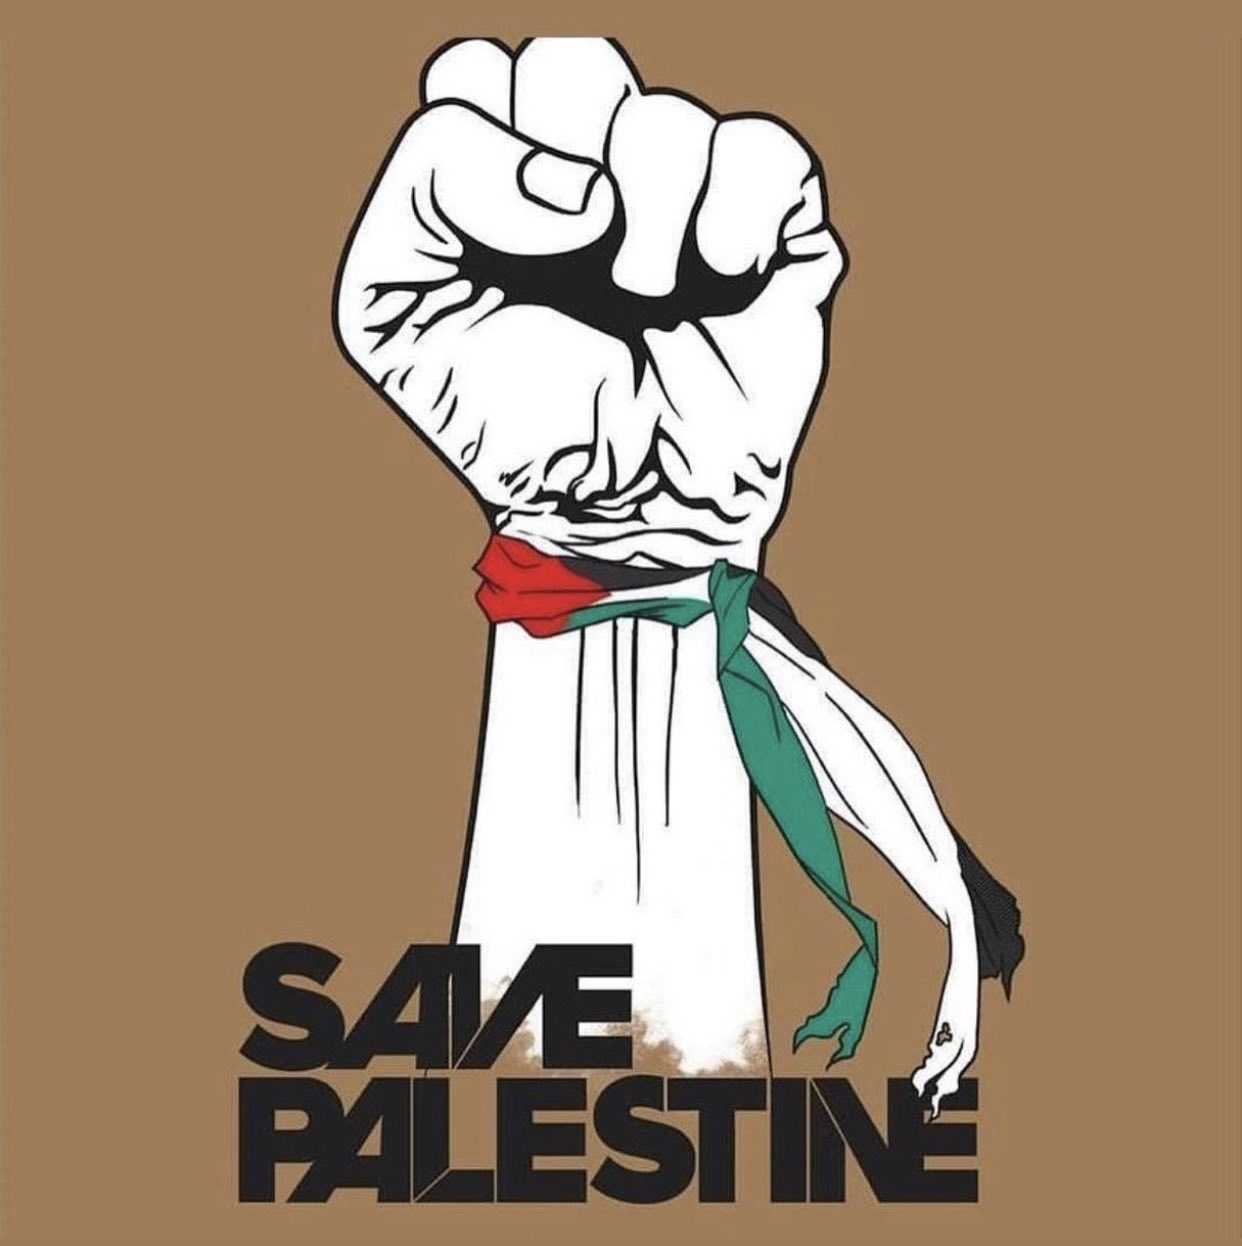 Palestine Wallpapers Kolpaper Awesome Free Hd Wallpap Vrogue Co